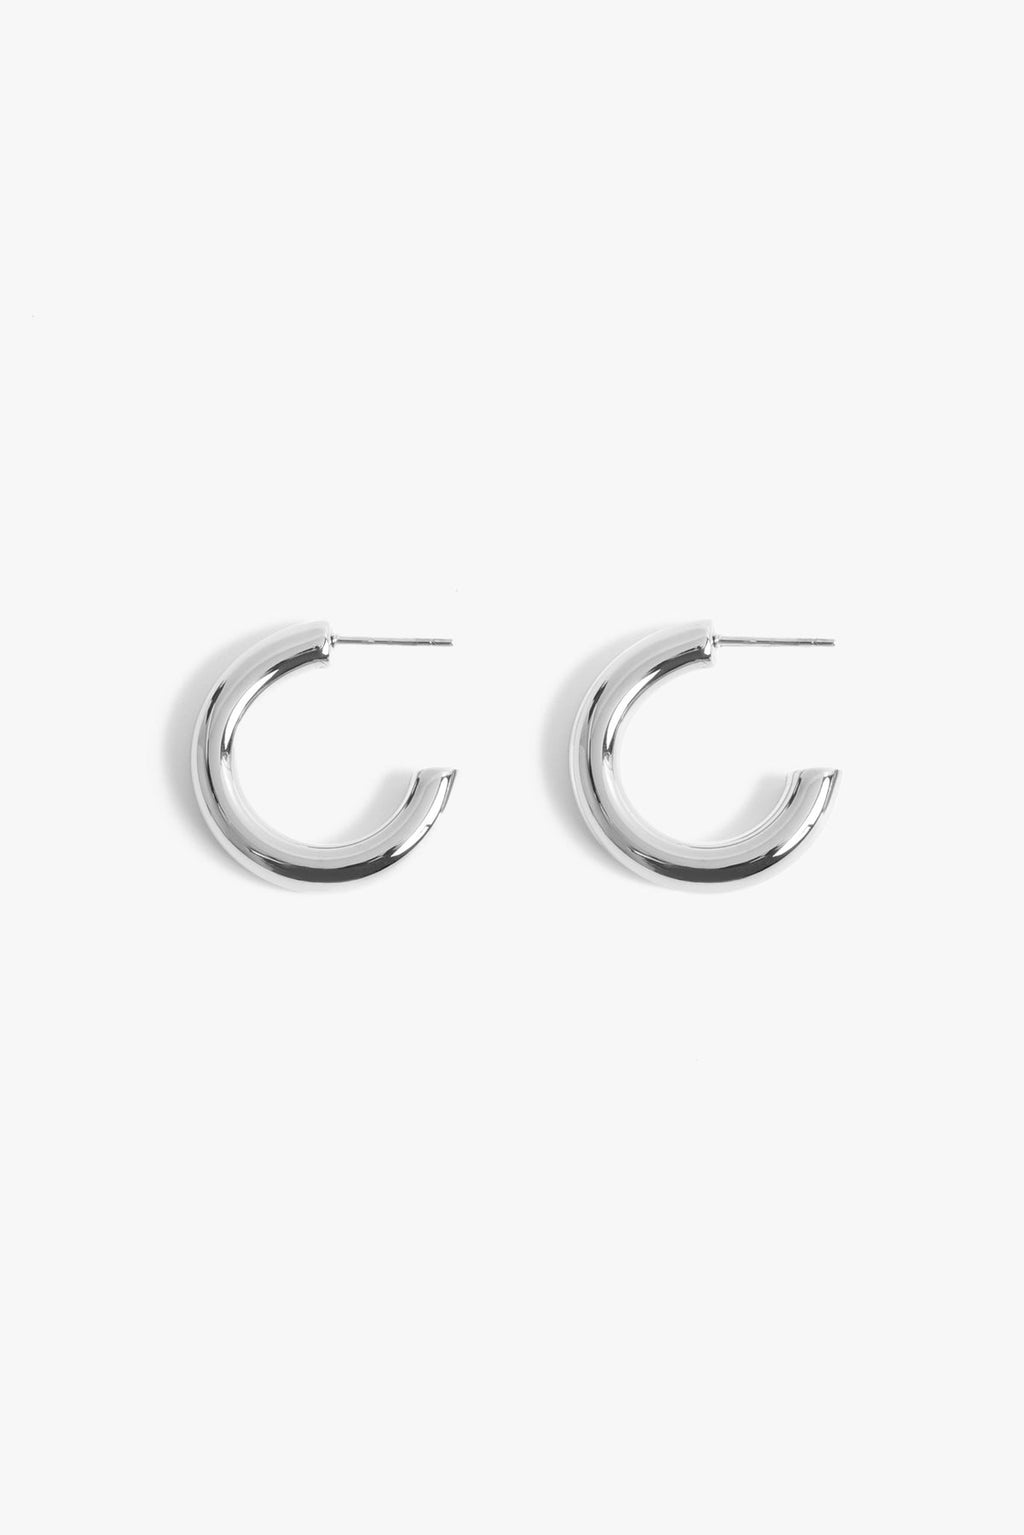 Marrin Costello Jewelry - Michaela 1" Hoops - Silver